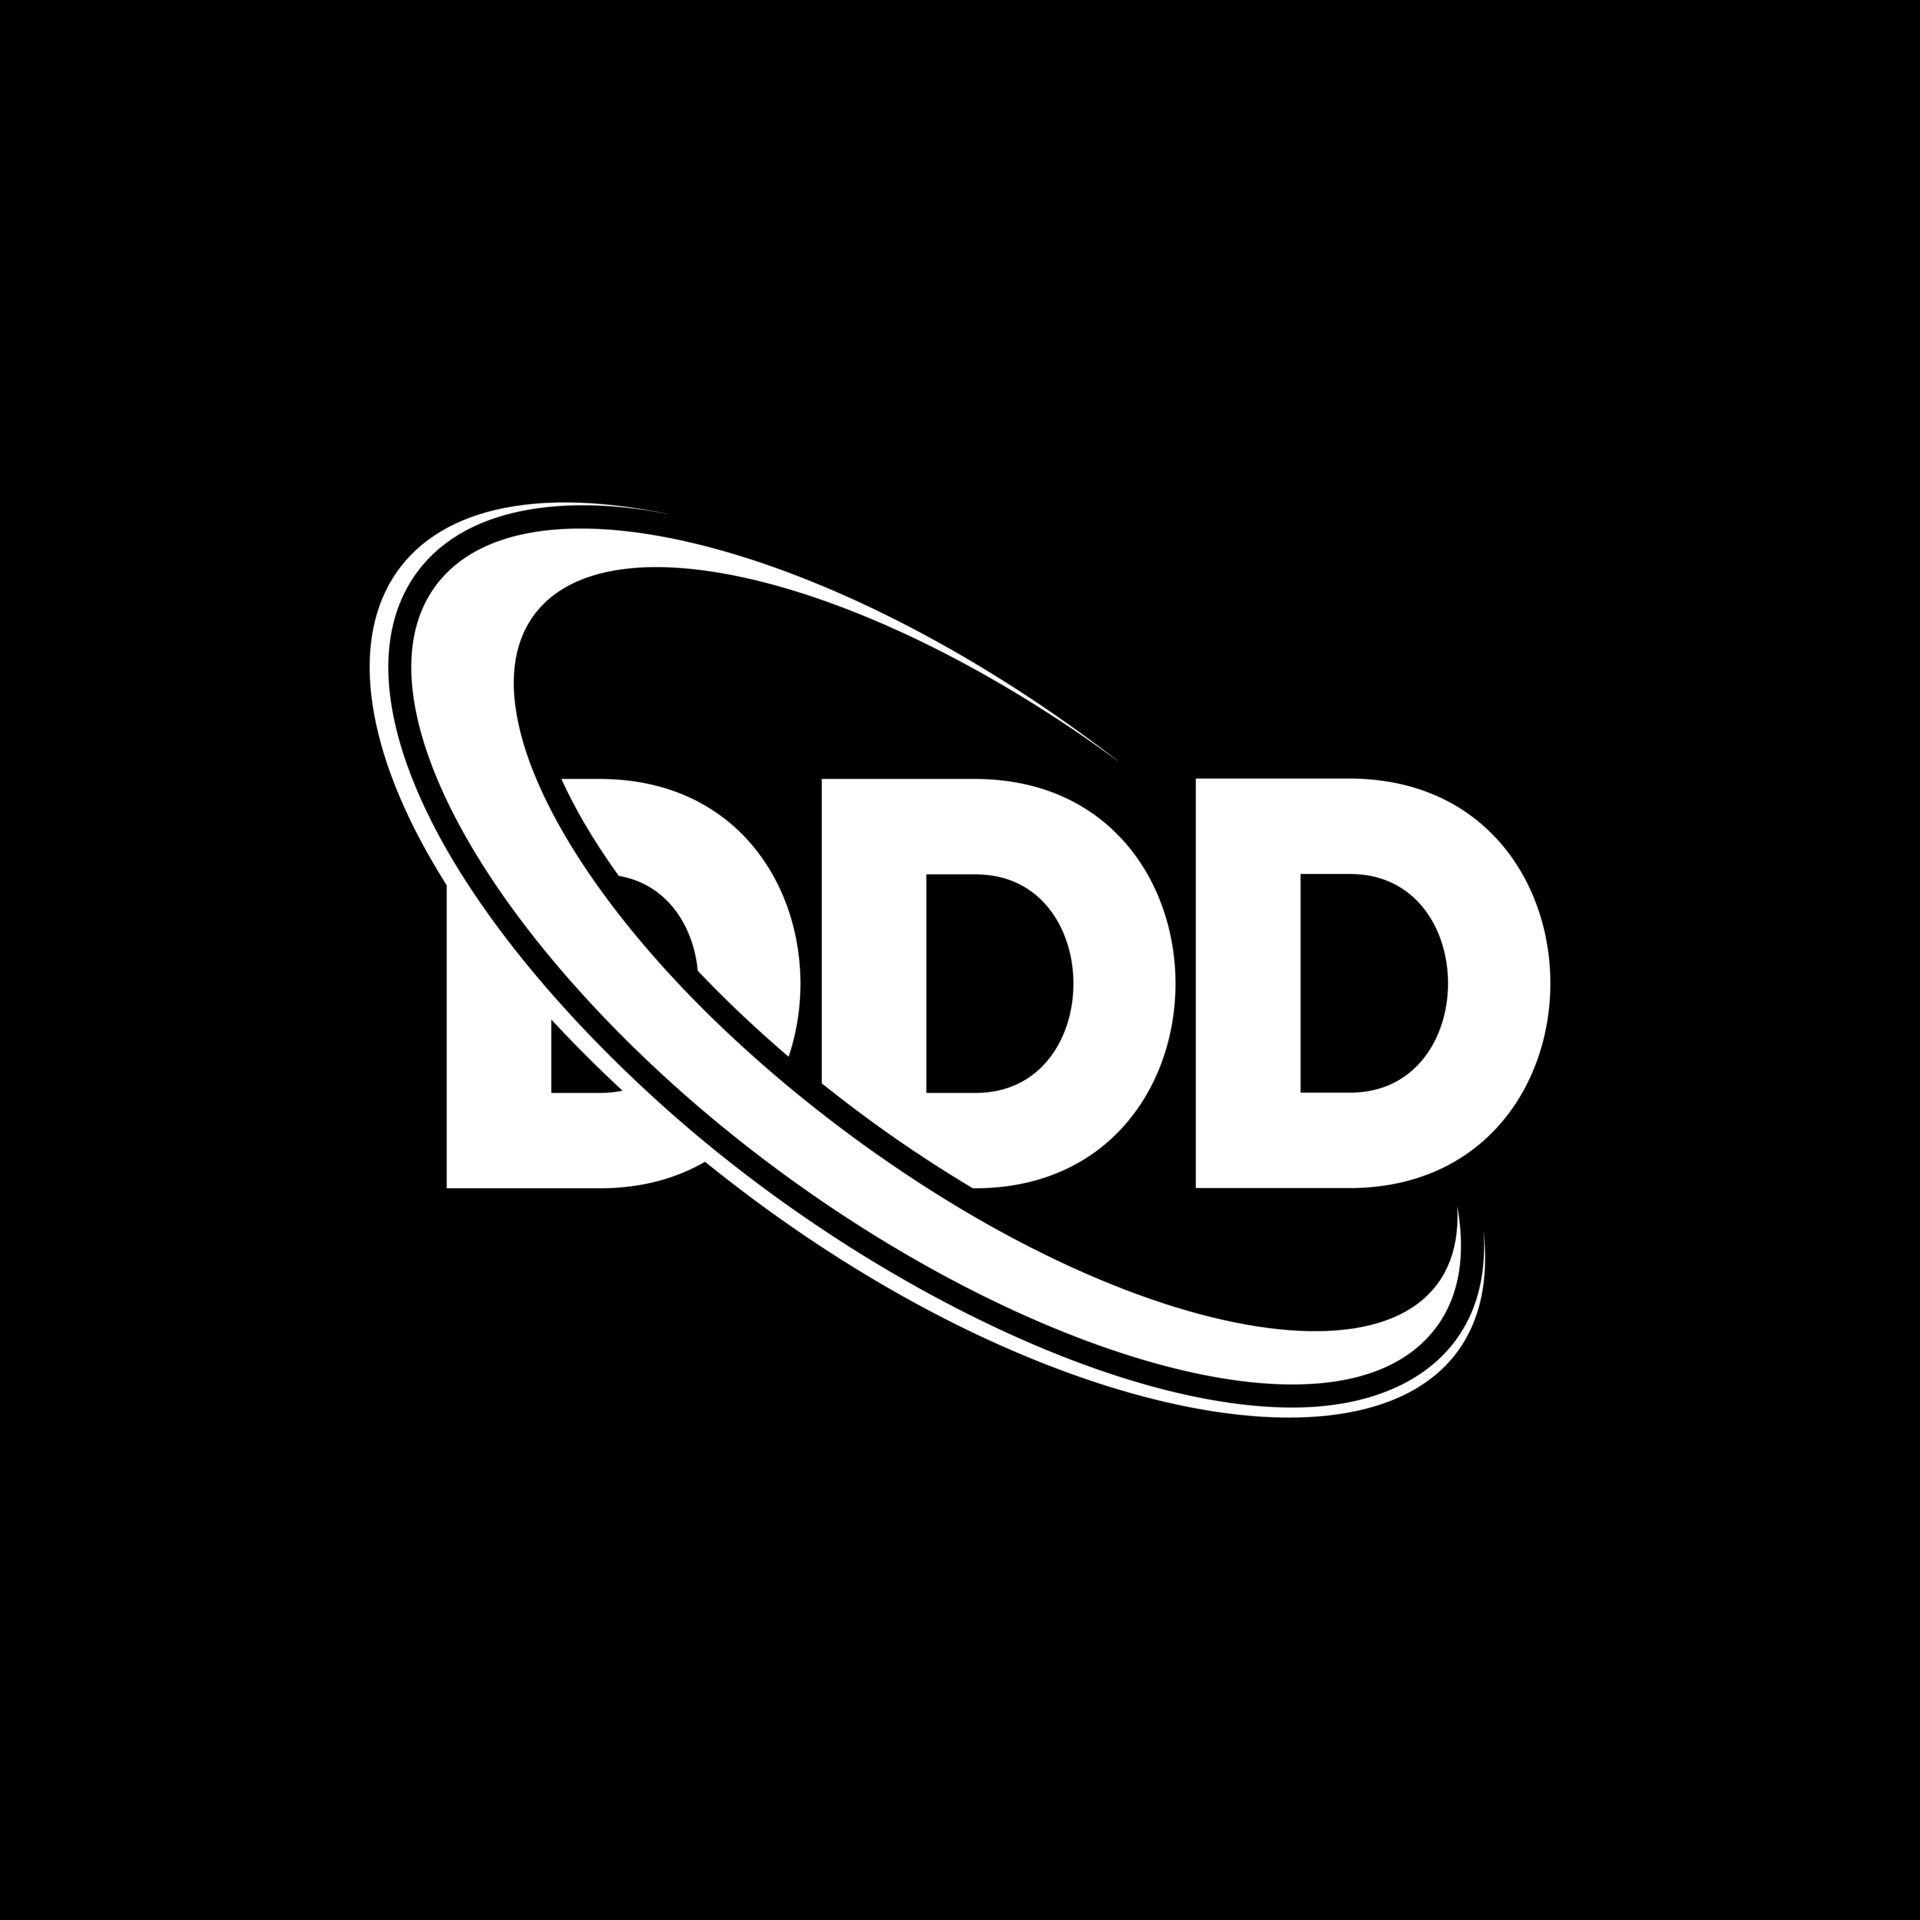 ddd-logo-ddd-letter-ddd-letter-logo-design-initials-ddd-logo-linked-with-circle-and-uppercase-...jpg